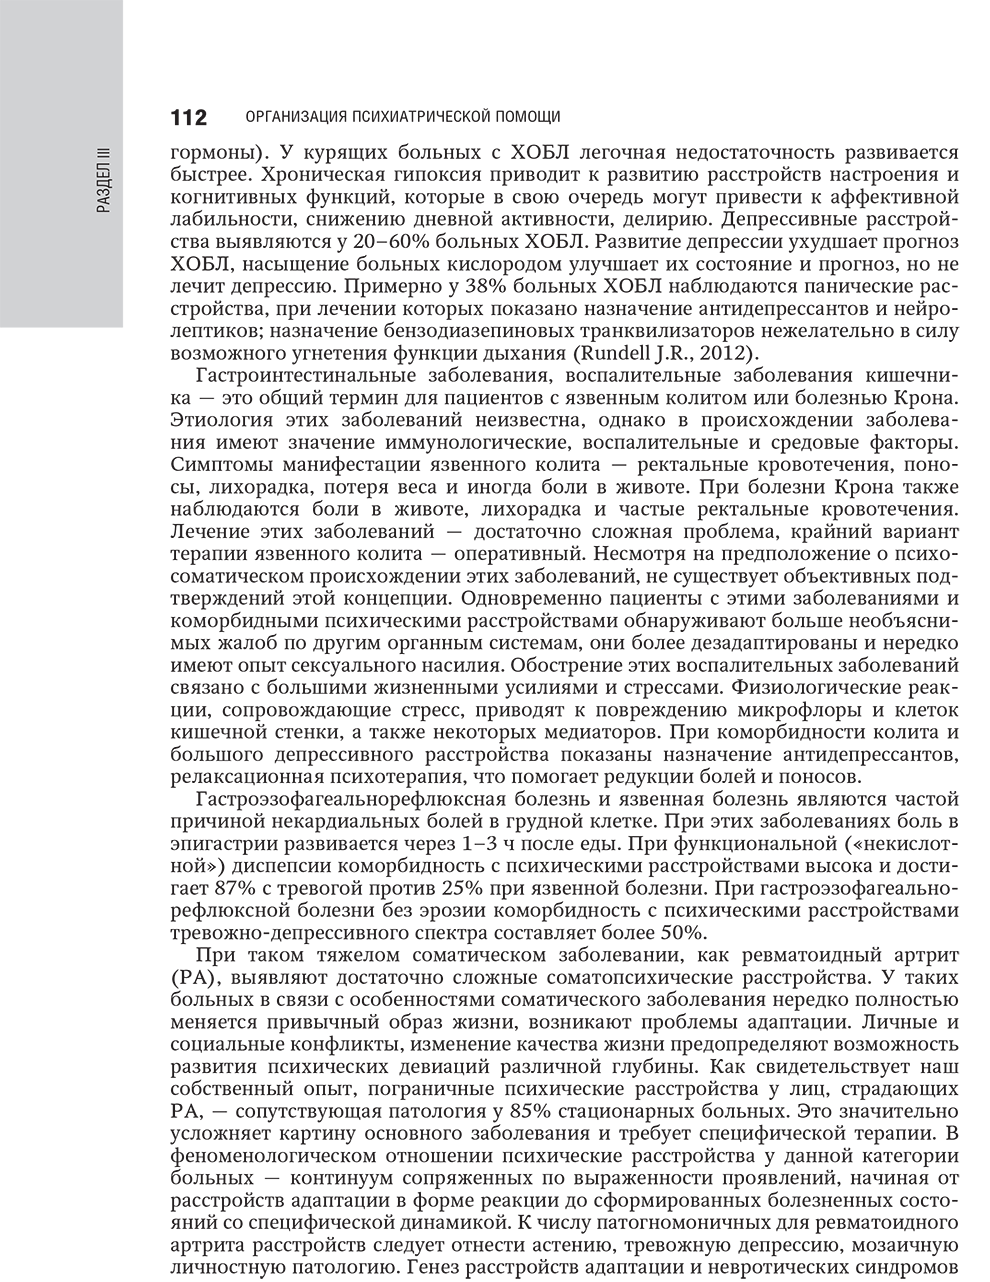 Пример страницы из книги "Психиатрия: национальное руководство" - Ю. А. Александровский, Н. Г. Незнанова